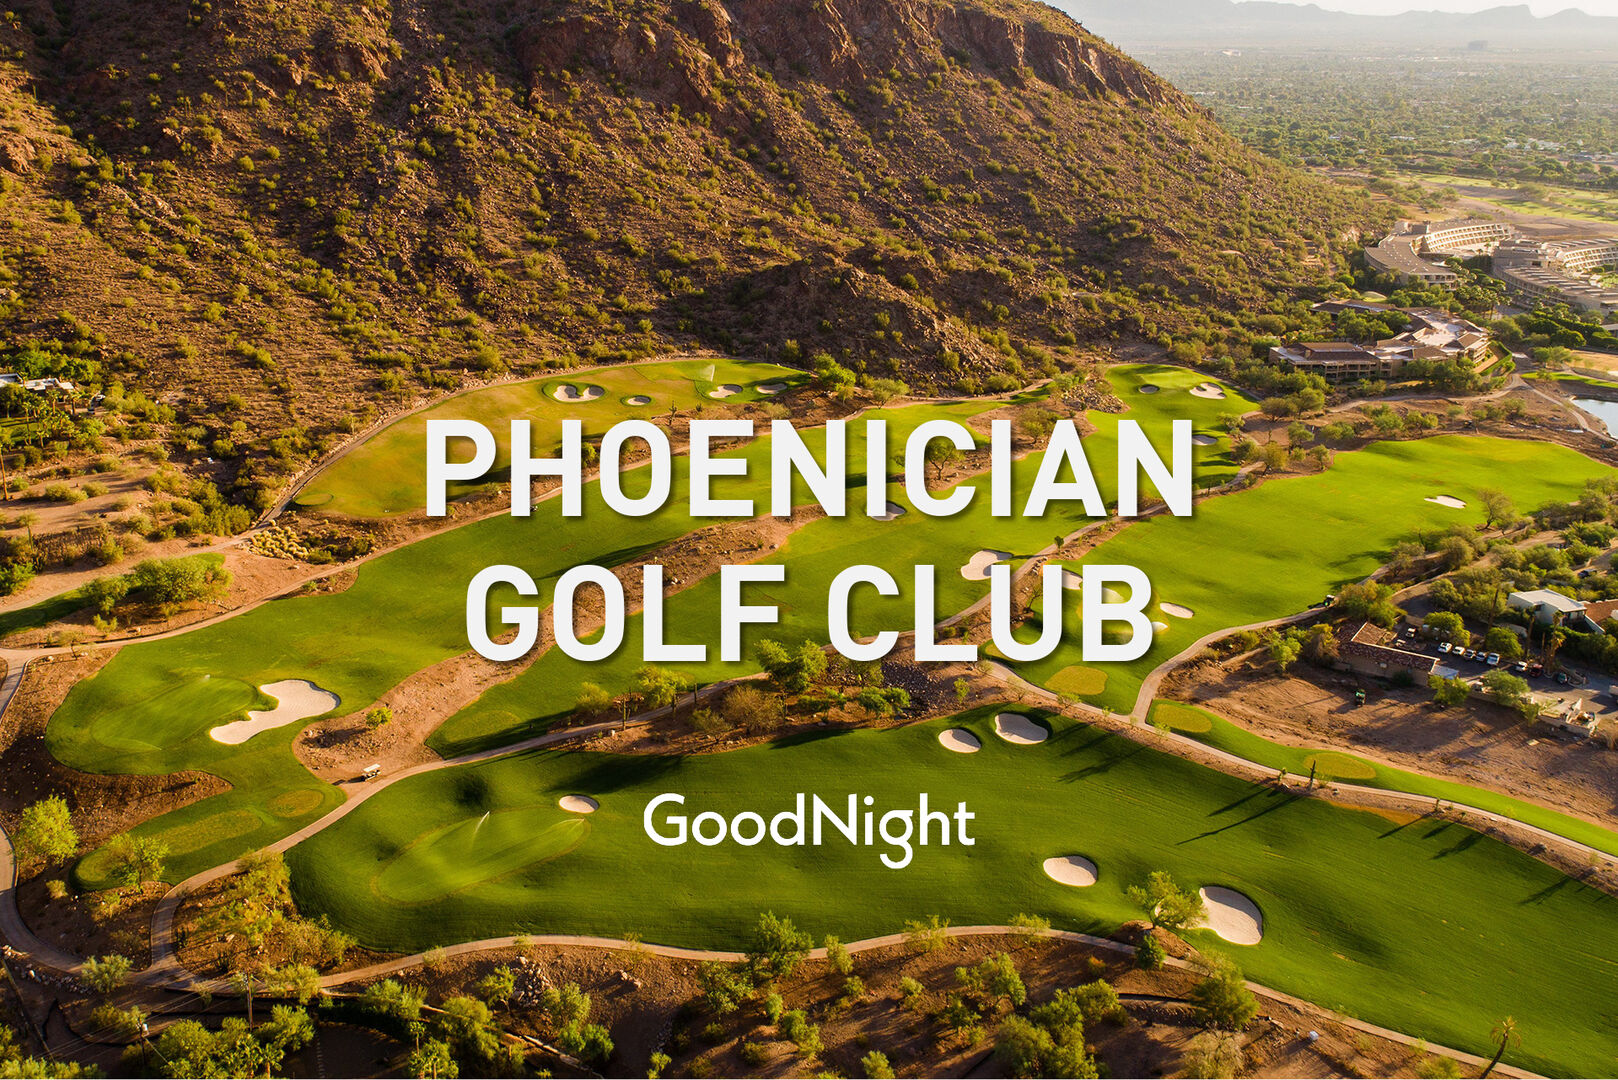 Phoenician Golf Club: 5 min